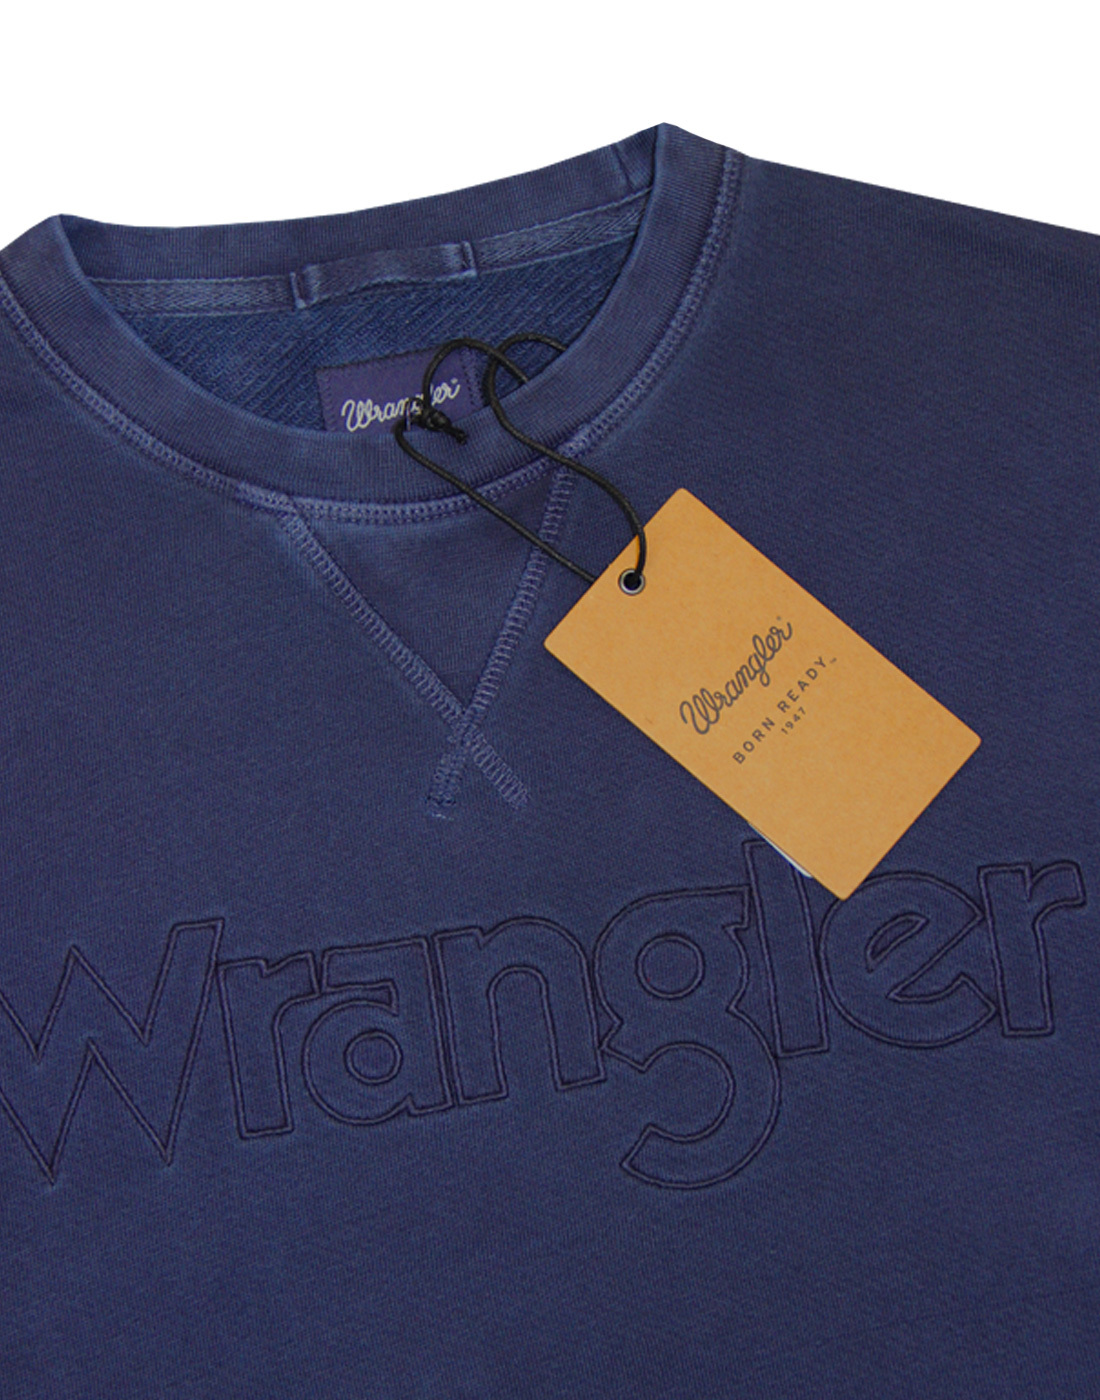 WRANGLER Men's Retro 70s Authentic Kabel Crew Sweatshirt in Navy